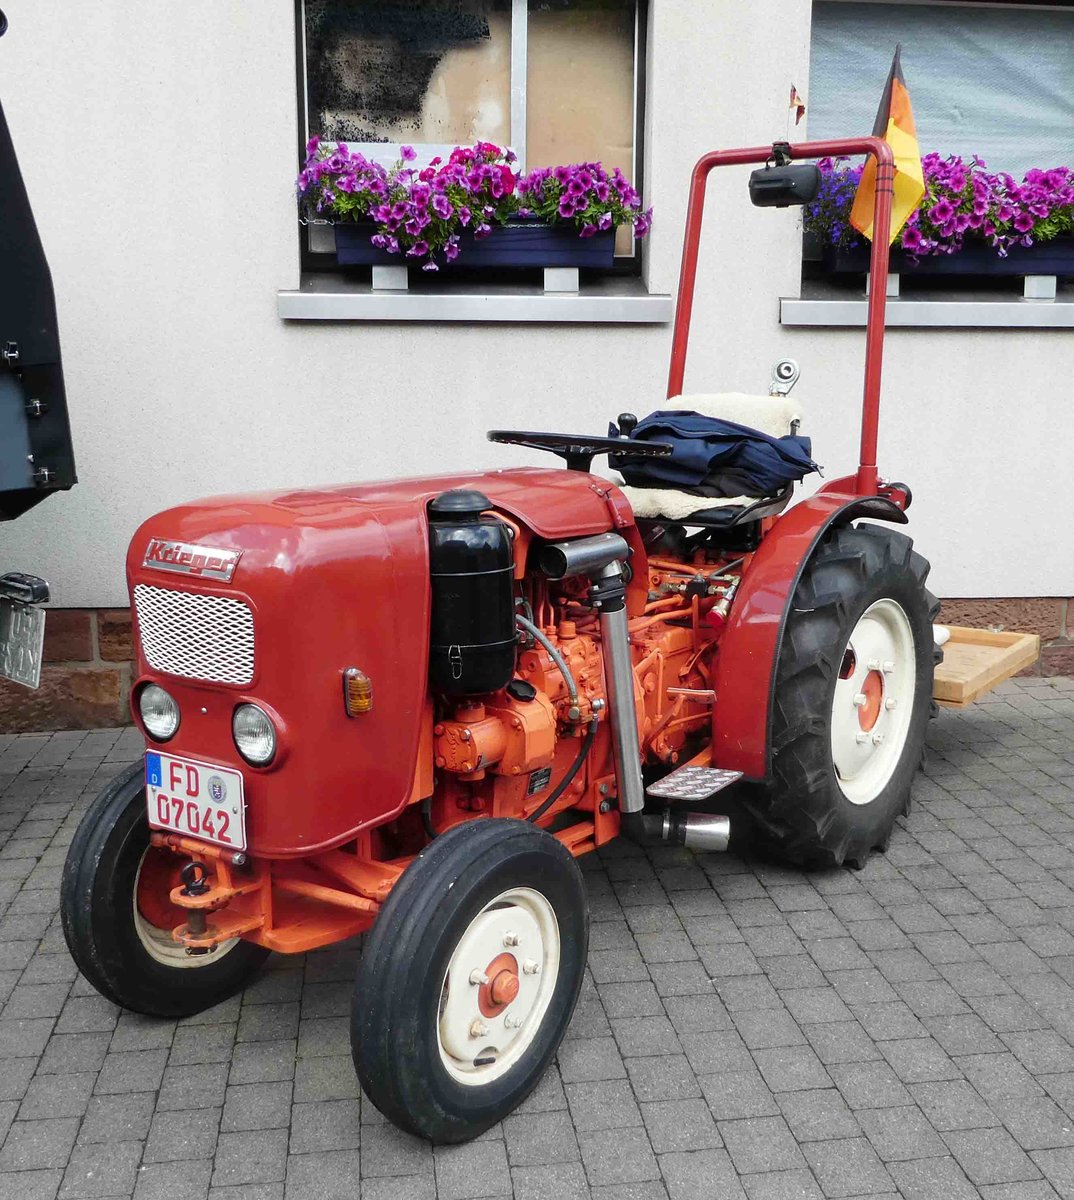 =Krieger - Traktor, ausgestellt anl. Ortsjubiläum von Fraurombach im August 2017